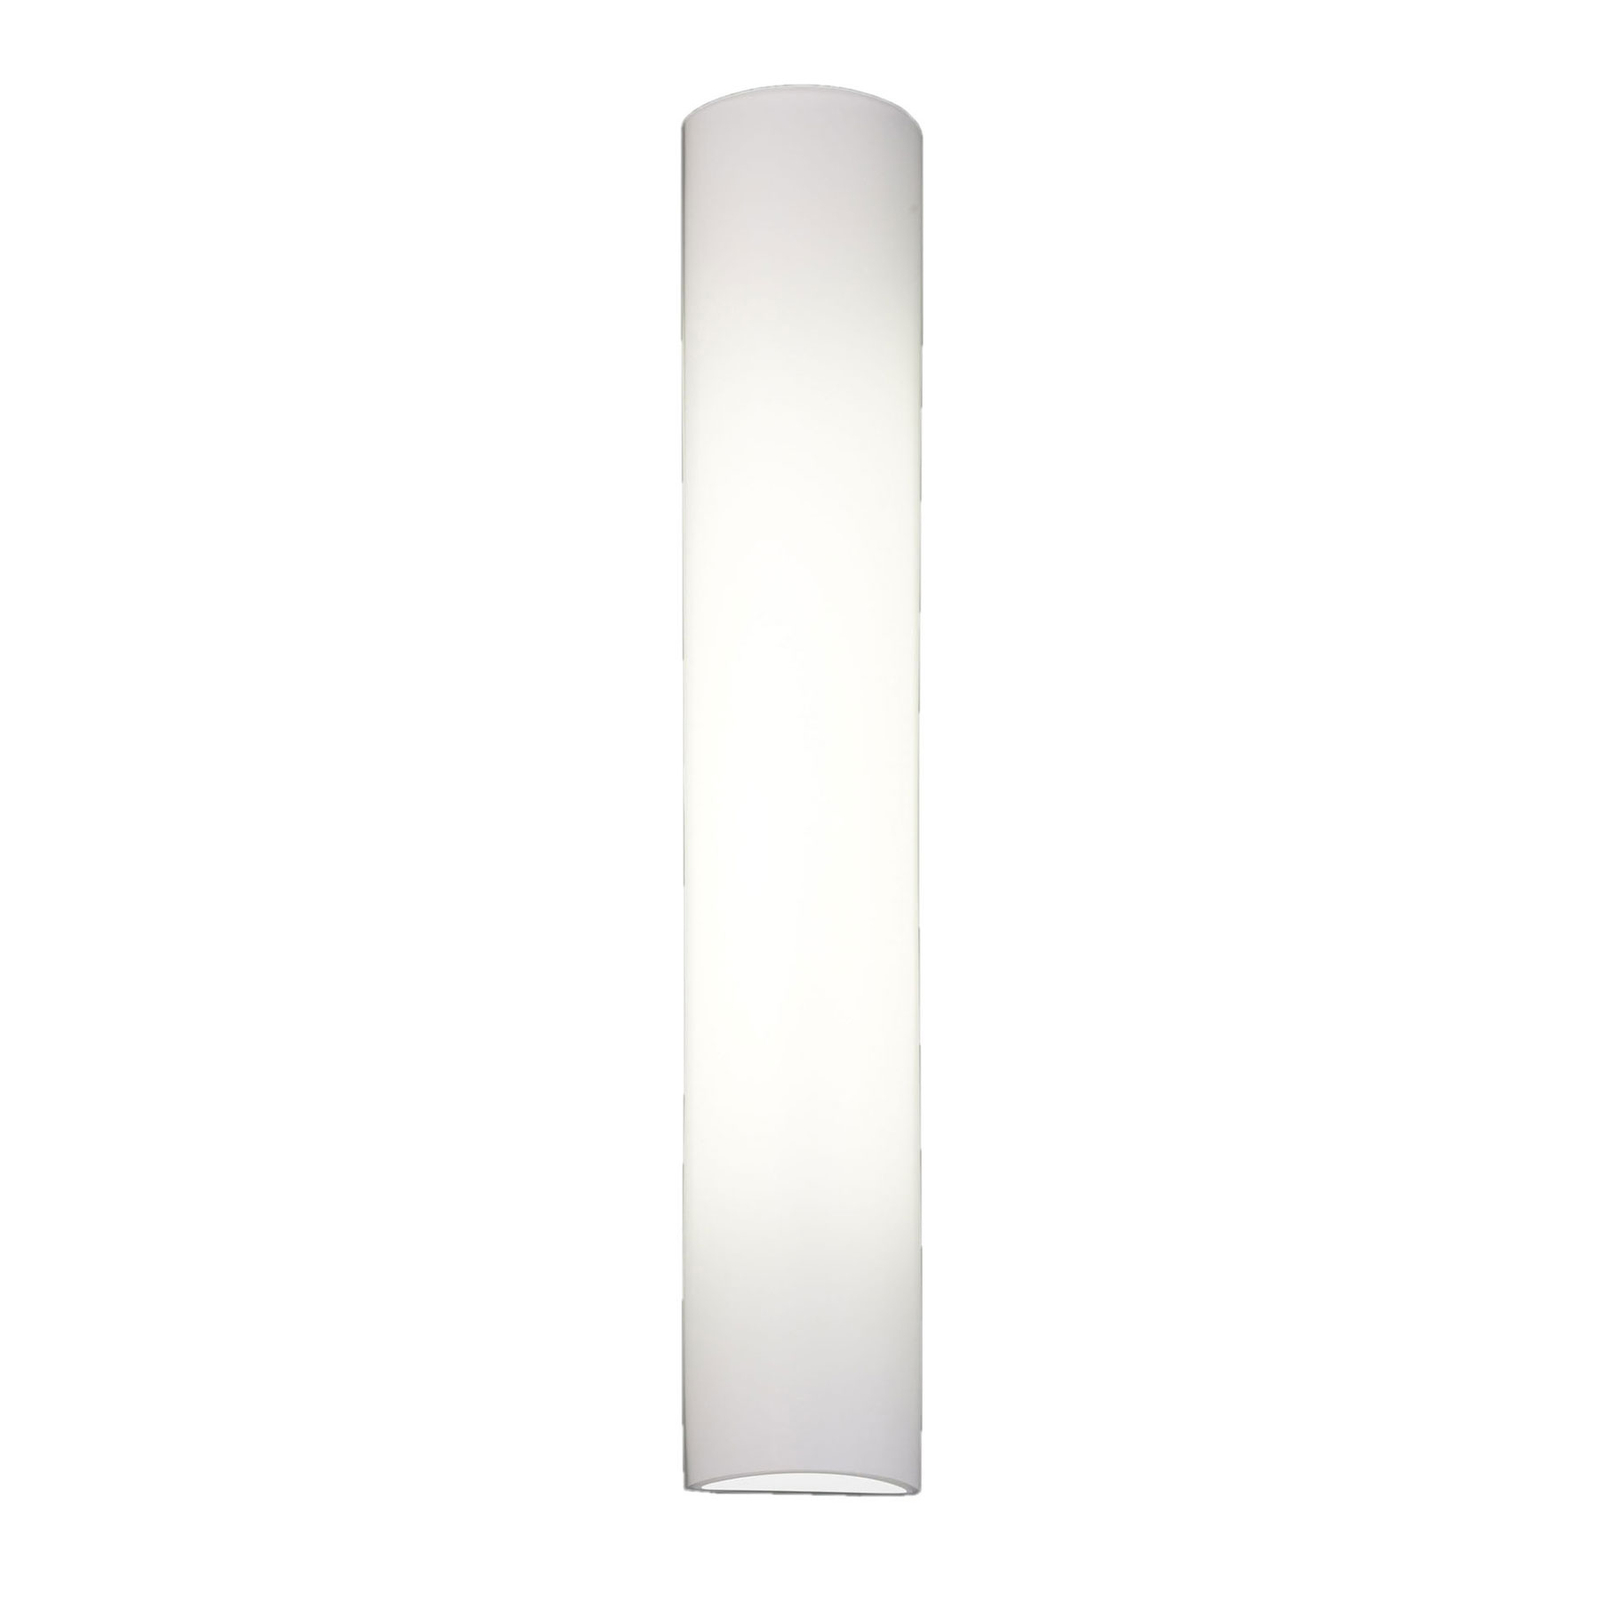 BANKAMP Cromo LED-væglampe i glas, højde 40cm